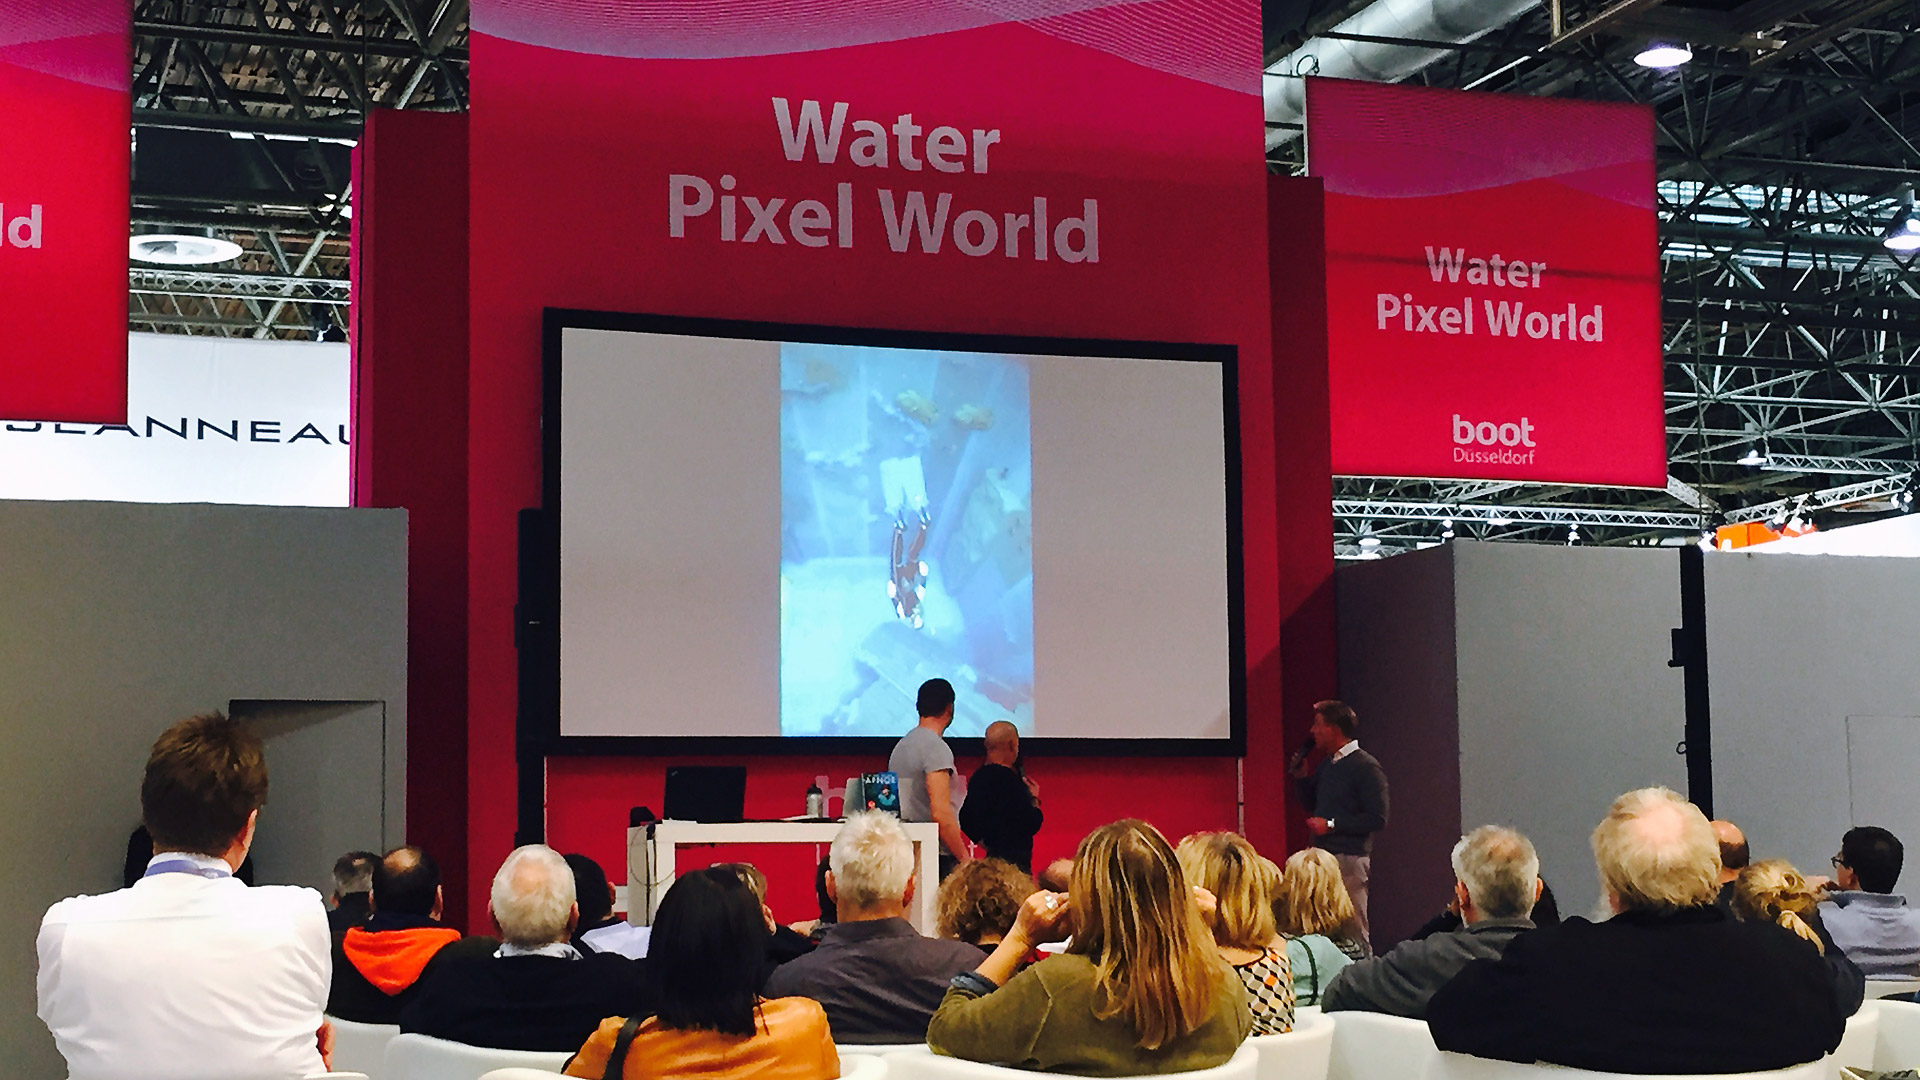 Water Pixel World: Vortrag auf der Boot 2015